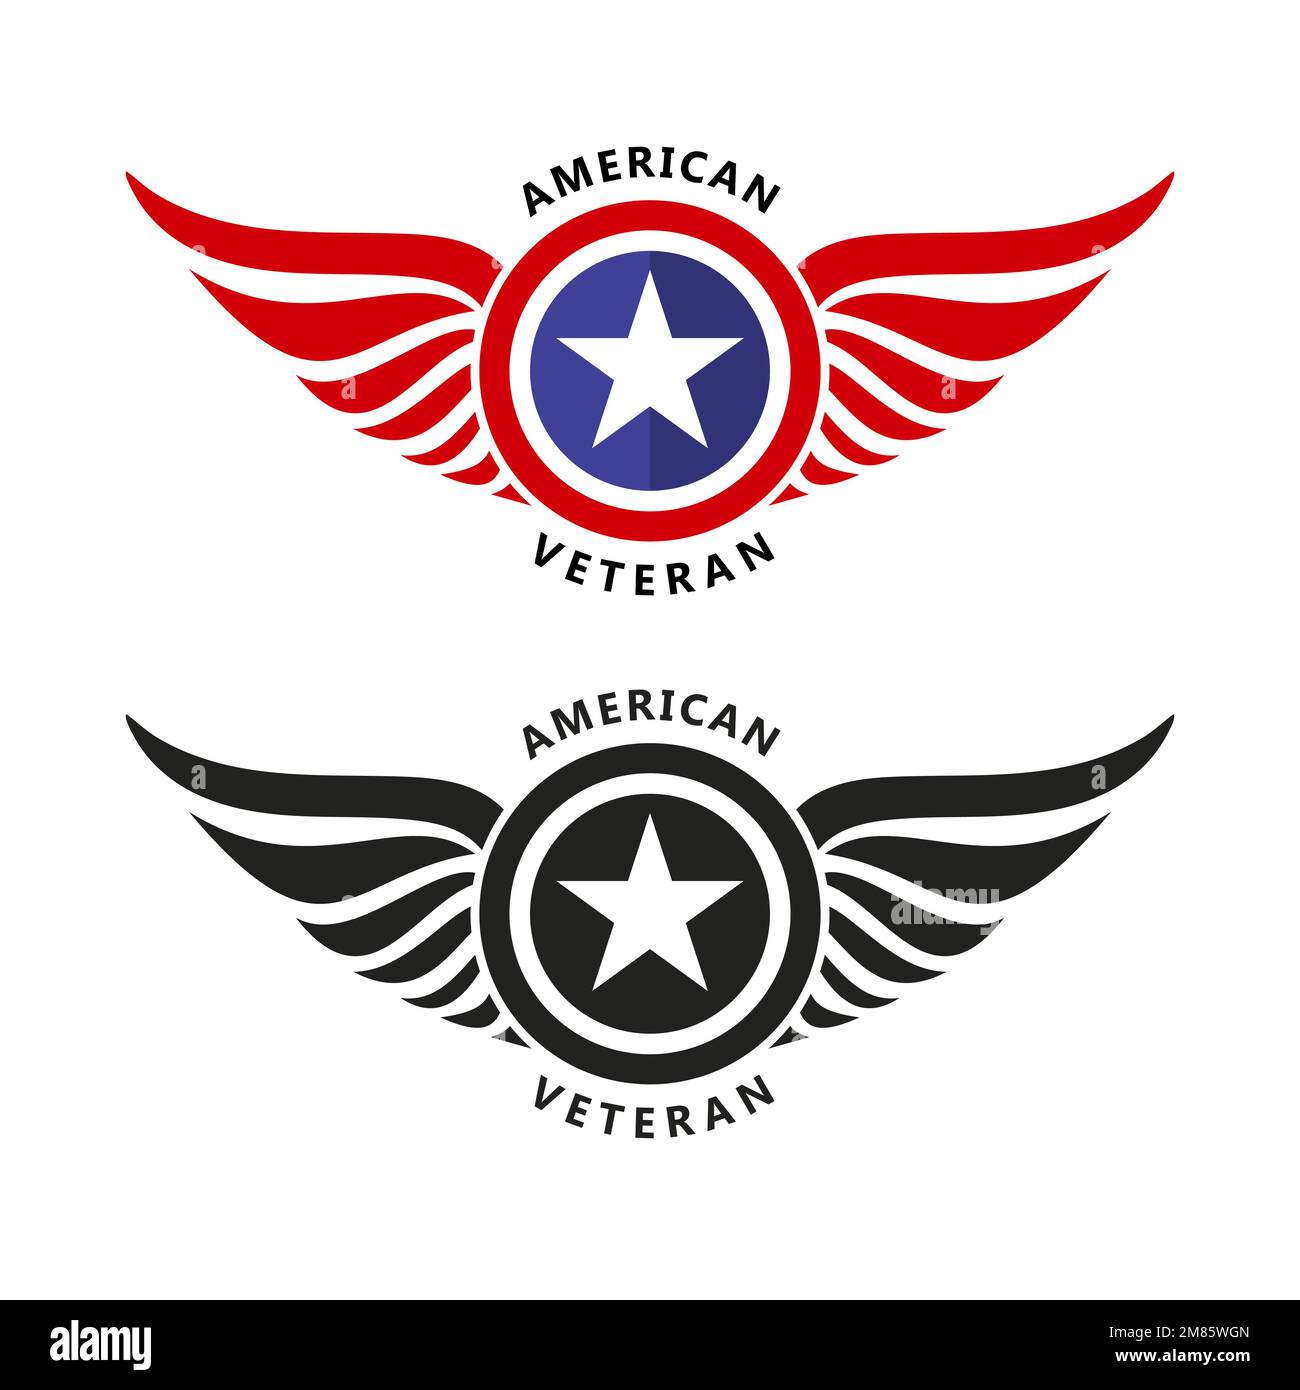 Ein Satz Wings-Abzeichen mit US-Sternen. Design-Vorlage für das Logo des Luftfahrt-Labels. US-Militärveteran-Vektordarstellung Stock Vektor